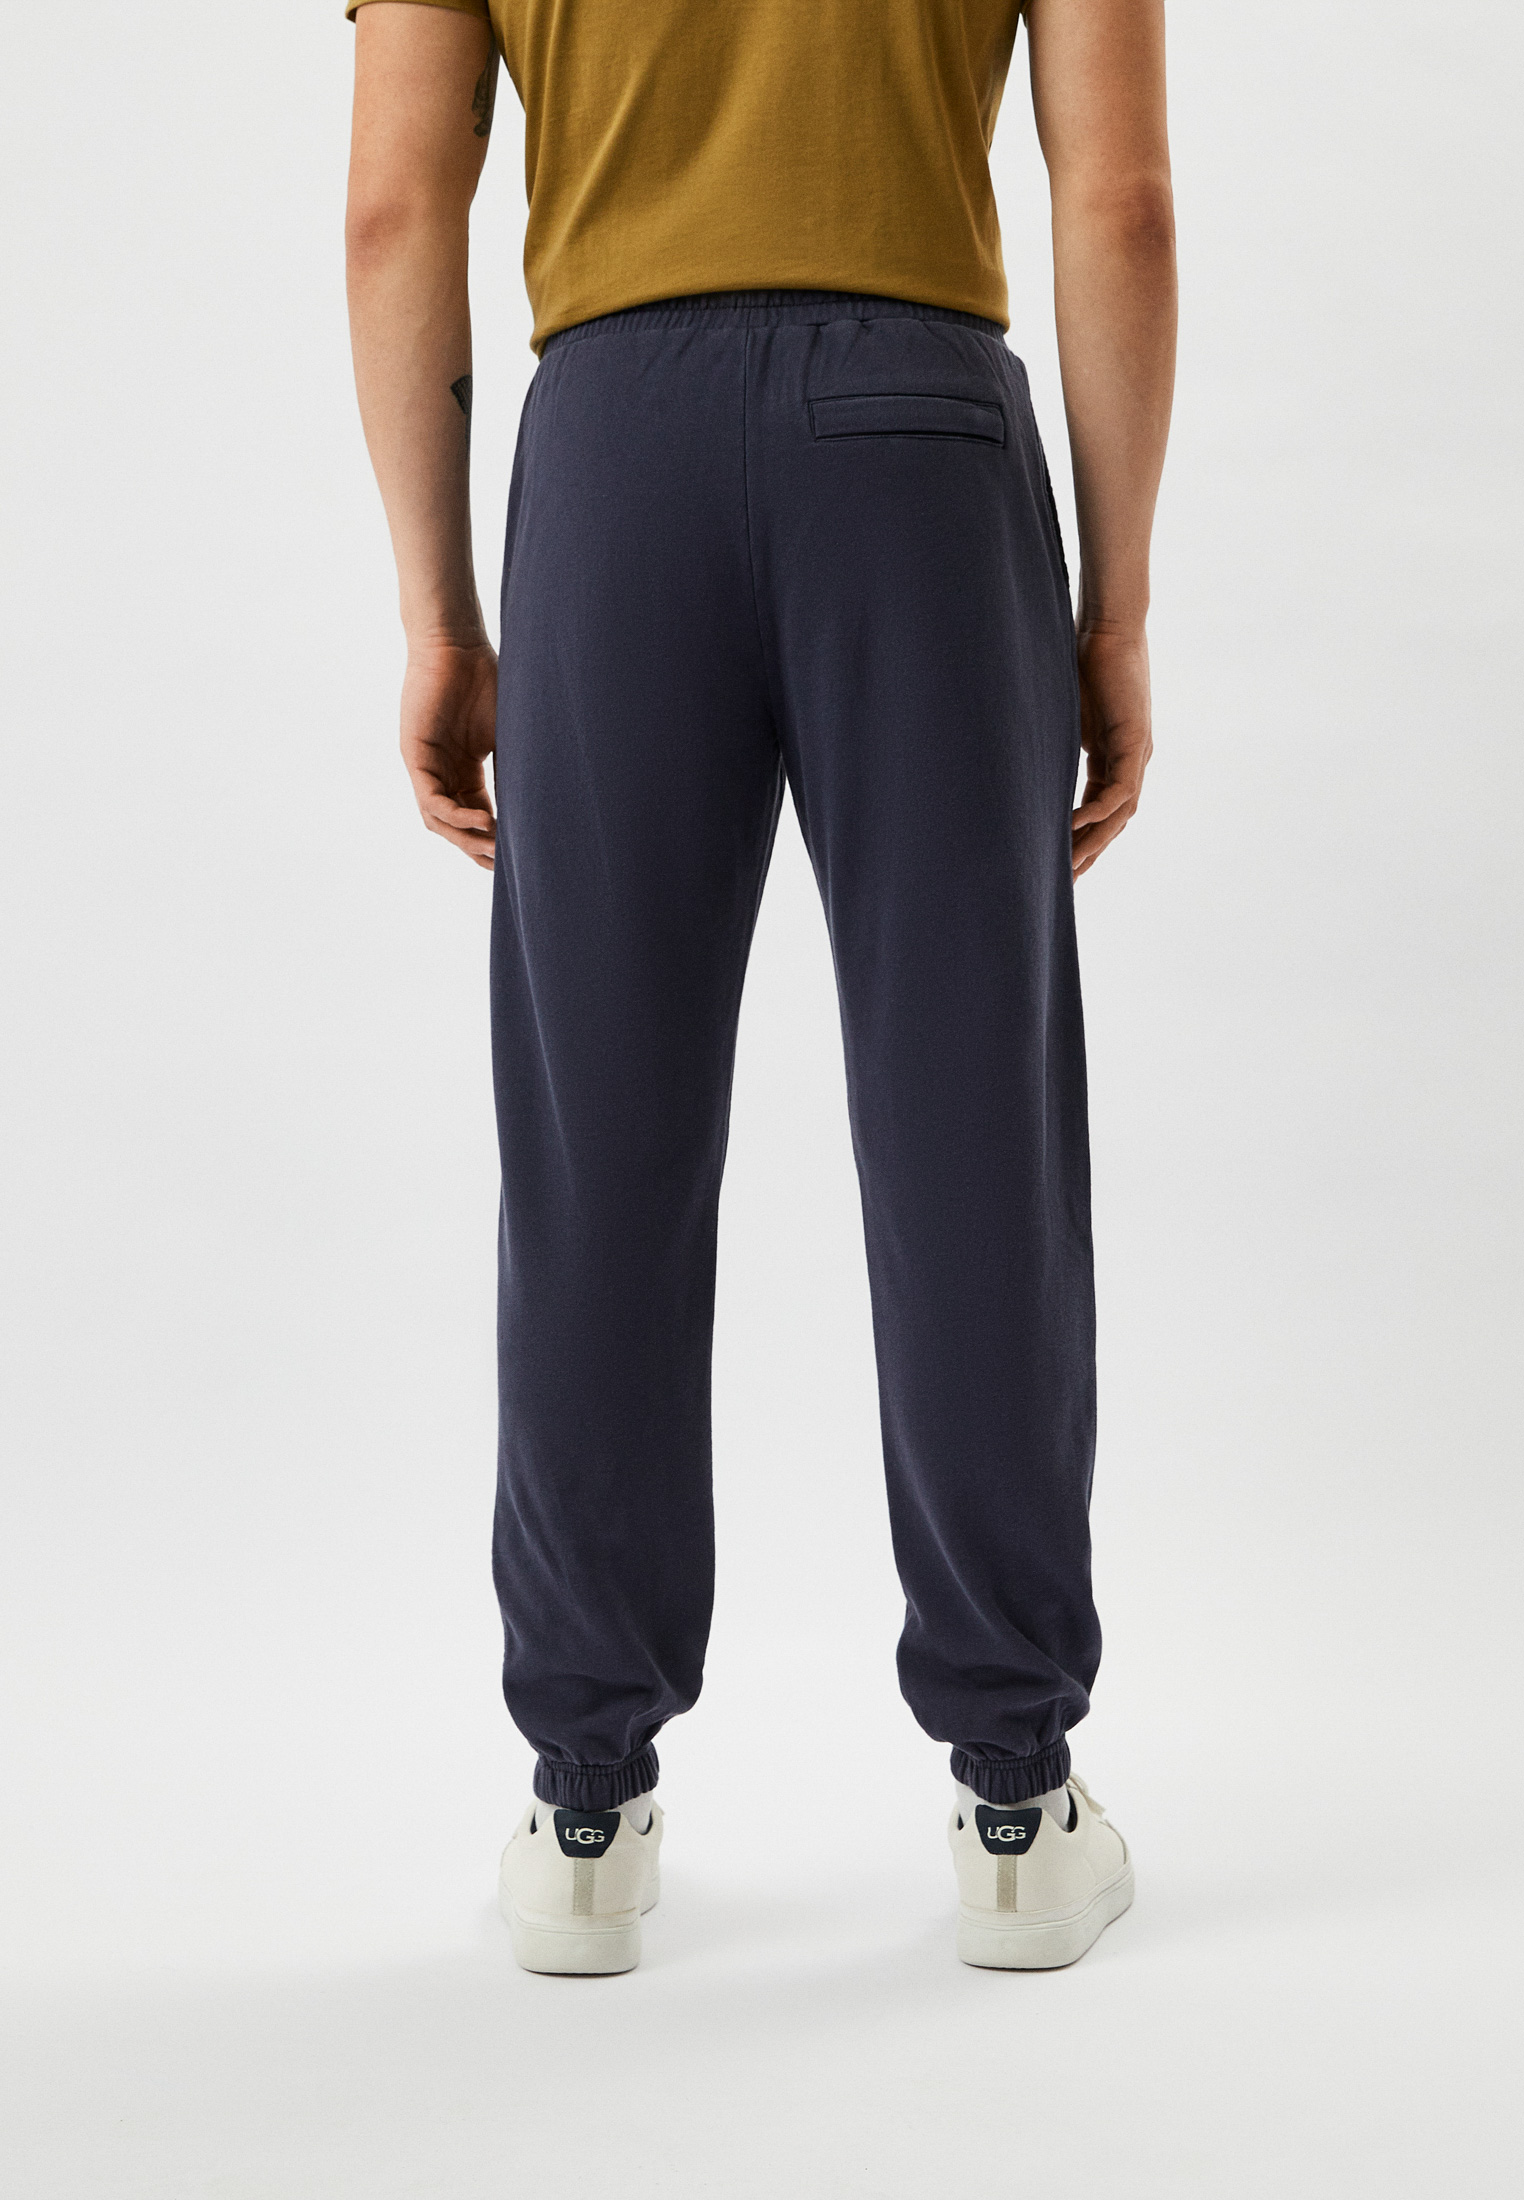 Мужские спортивные брюки Liu Jo Uomo (Лиу Джо Уомо) M123P303WASHJOGG: изображение 3